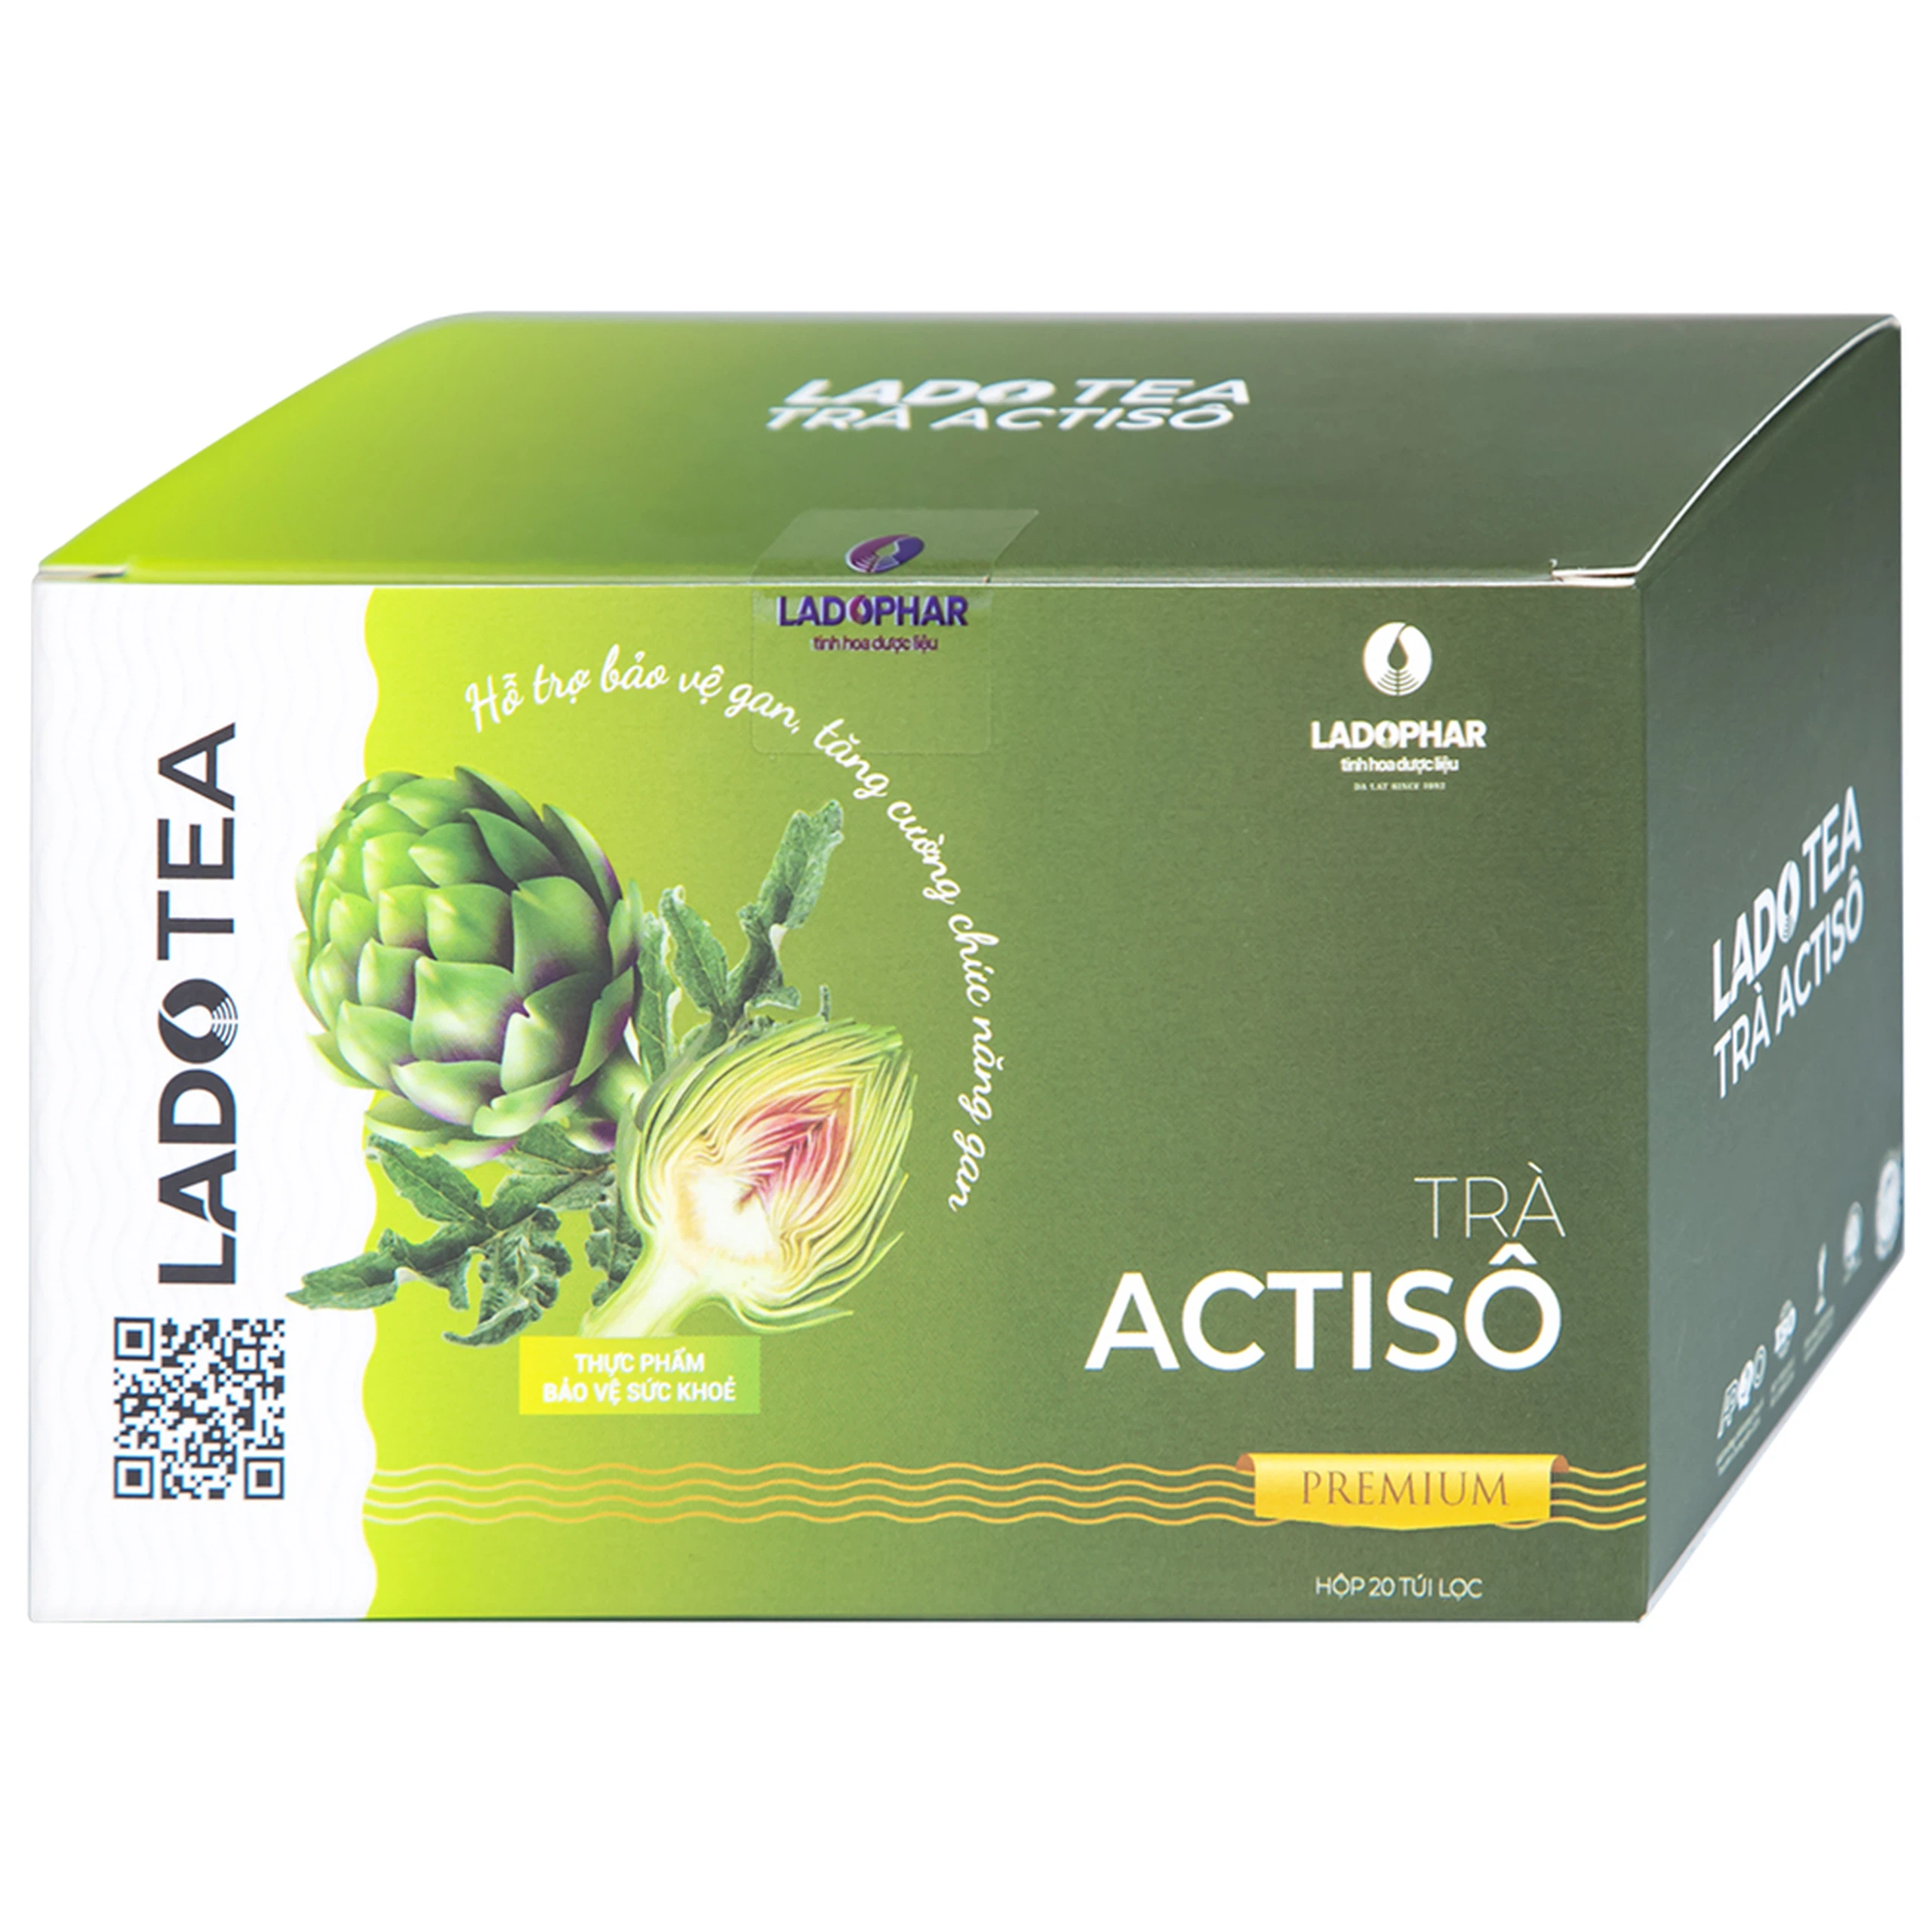 Trà Actisô Premium Ladophar hỗ trợ bảo vệ gan, tăng cường chức năng gan (20 túi x 2g)